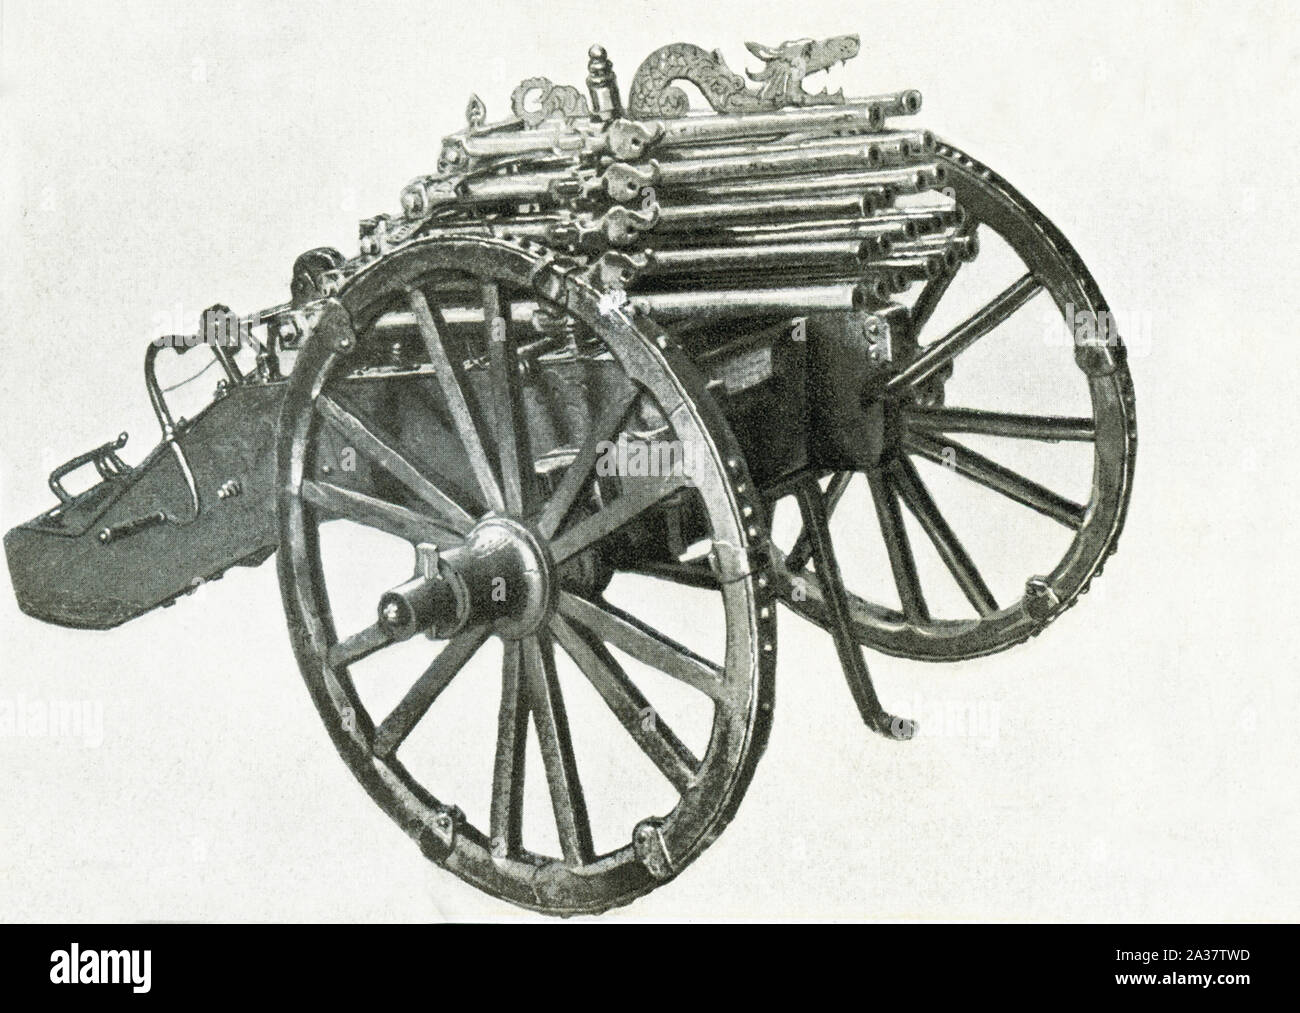 Esta imagen muestra un órgano-gun, también conocido como una pistola de salva, que data de 1600-1610. Dispone de 20 cañones de hierro en cinco niveles diferentes. Foto de stock